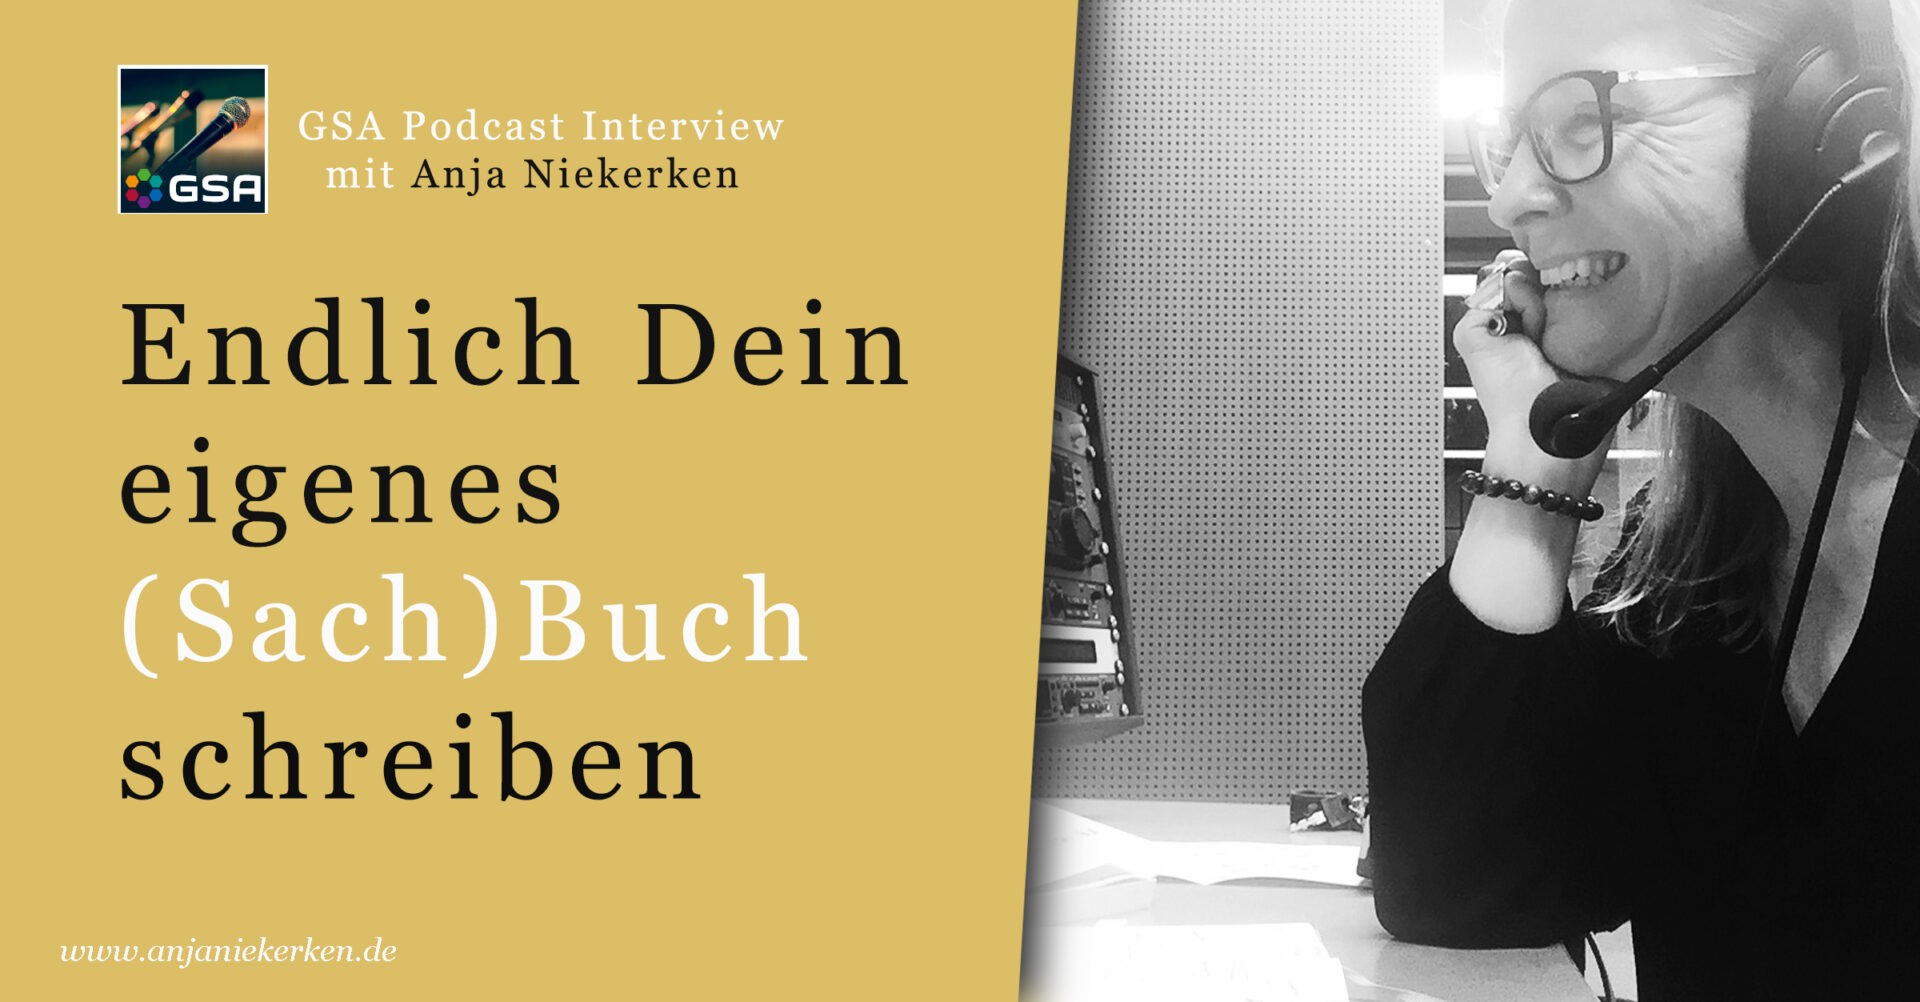 Endlich Dein eigenes (Sach)Buch. Interview mit Anja im Podcast der German Speakers Association.